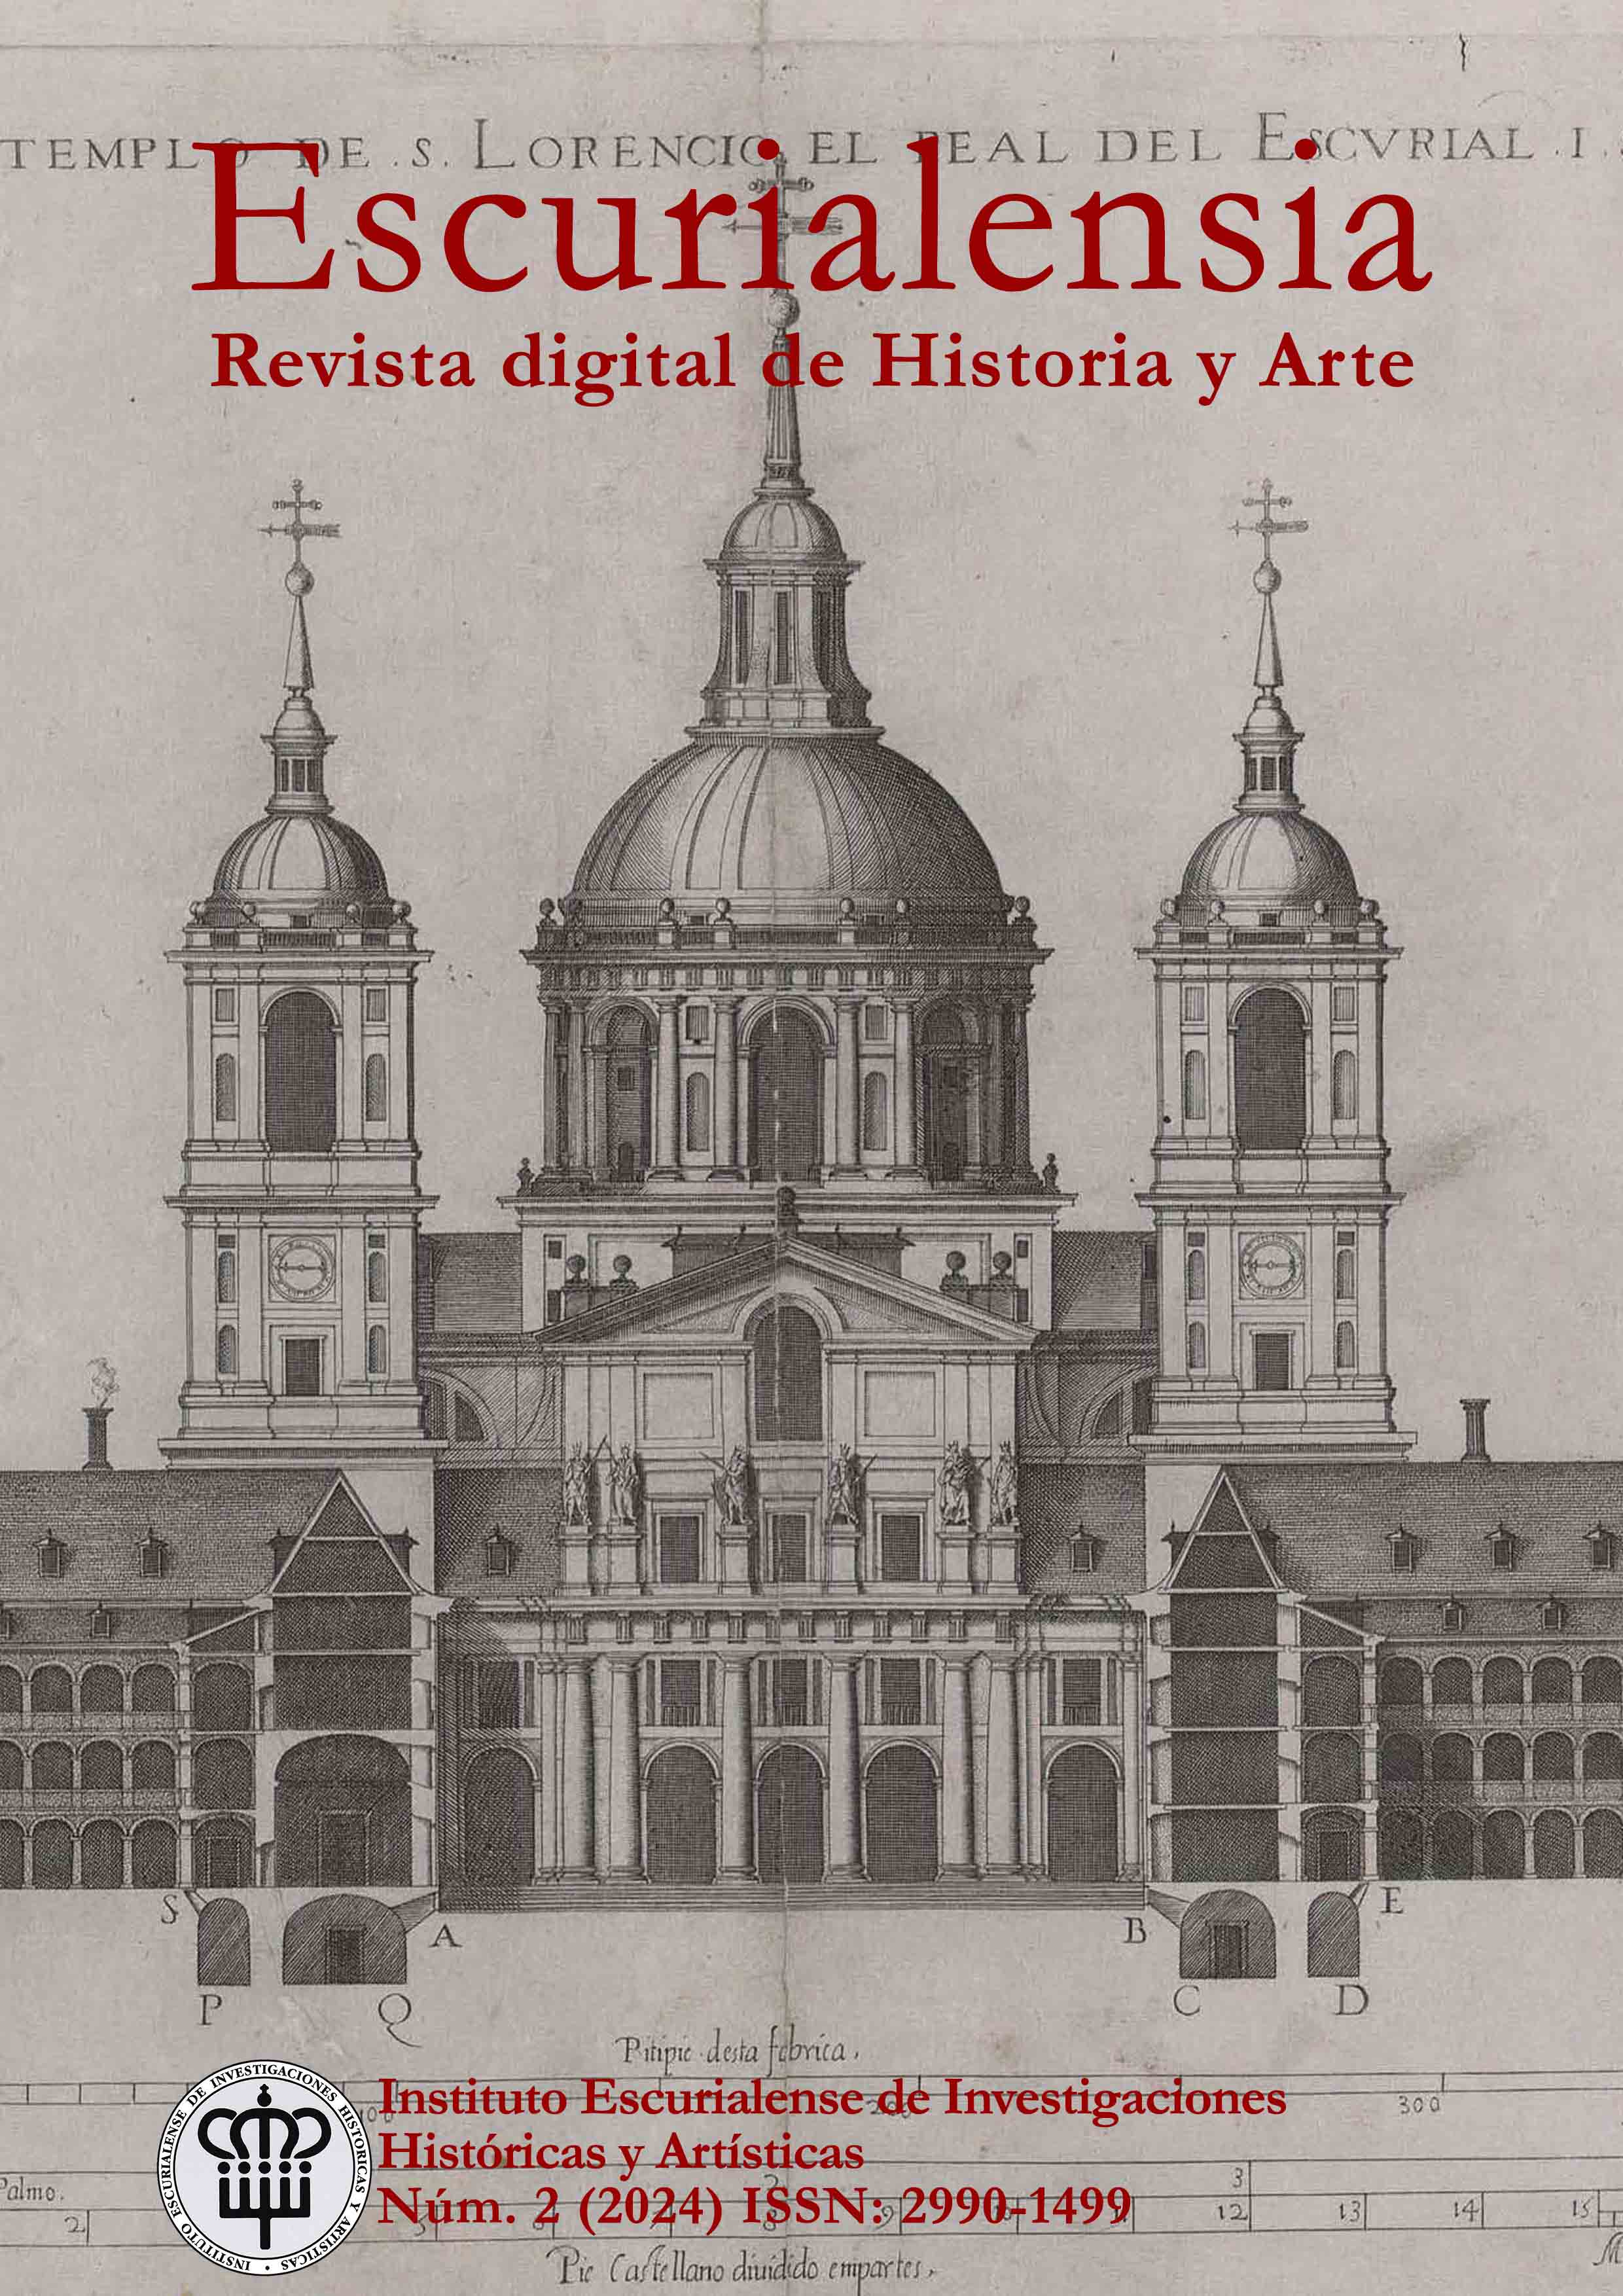 J. de Herrera, "Tercer Diseño, Alzado del frente del templo y sección del interior del colegio y convento (grabado por P. Perret)